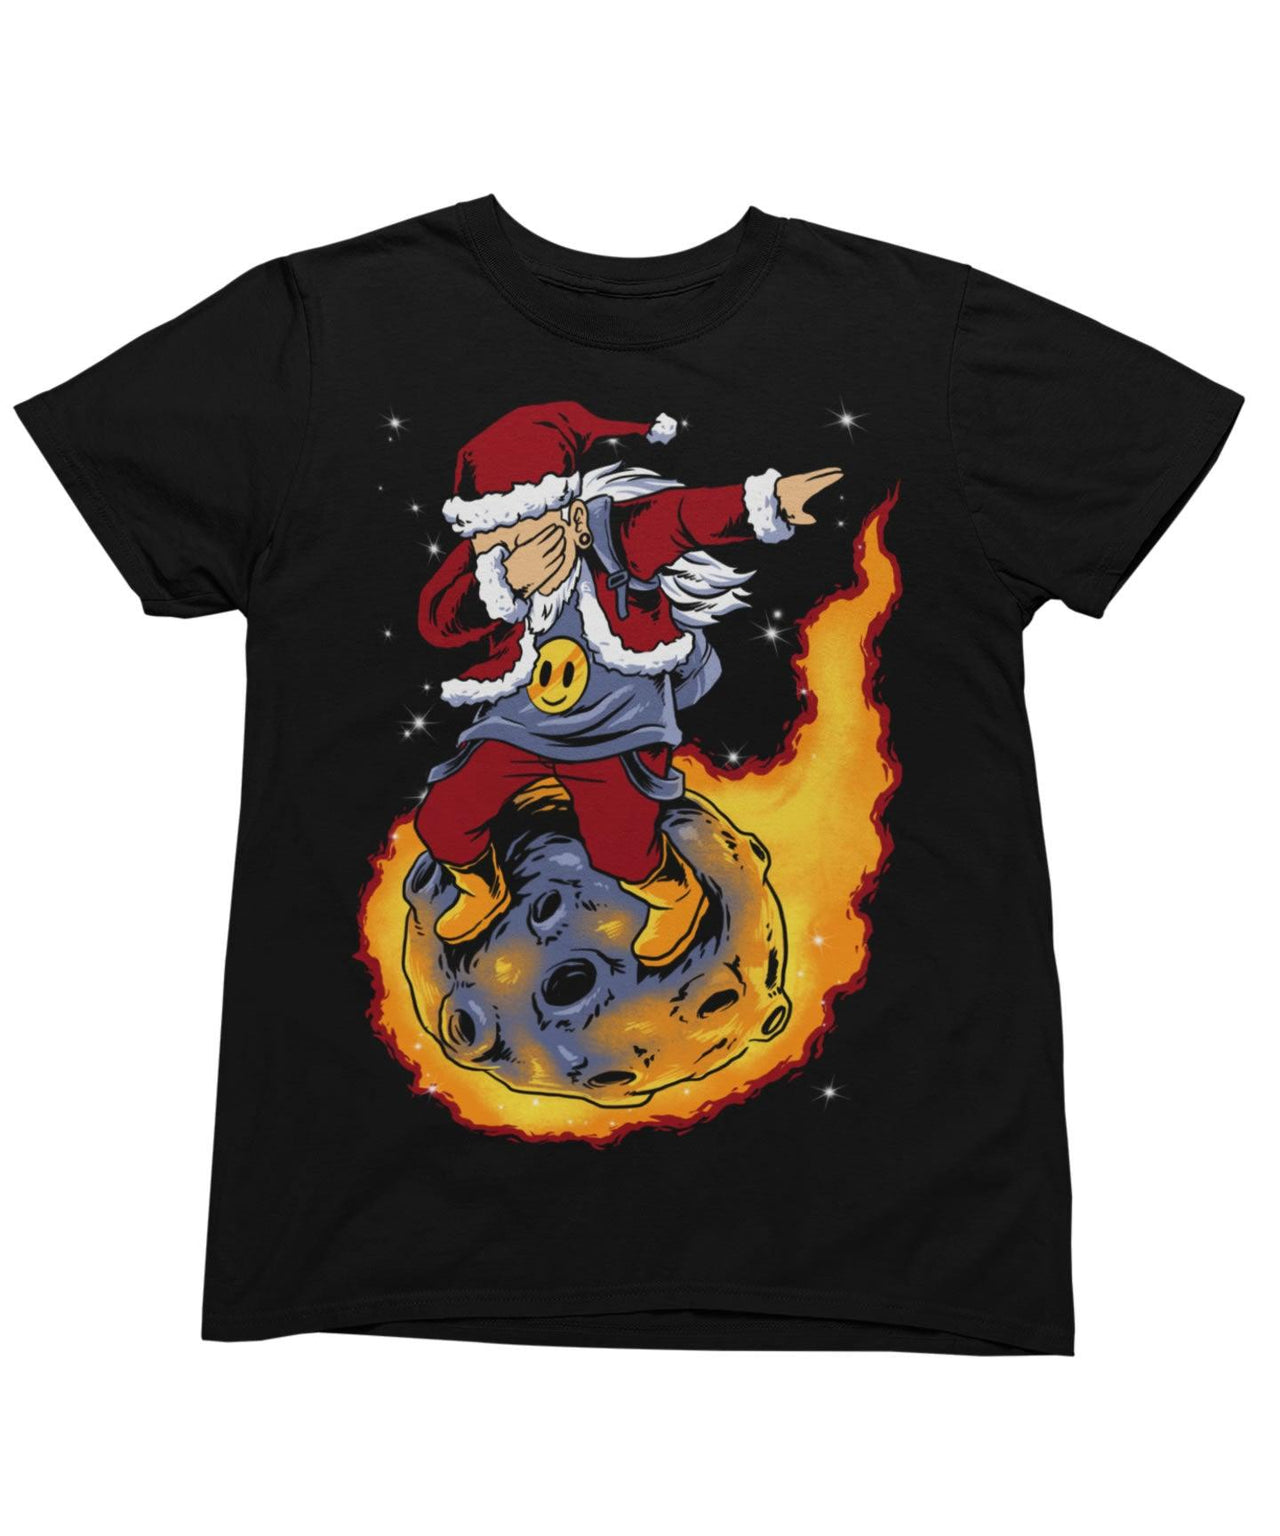 Skywalker Santa Unisex Christmas Graphic T-Shirt For Men 8Ball